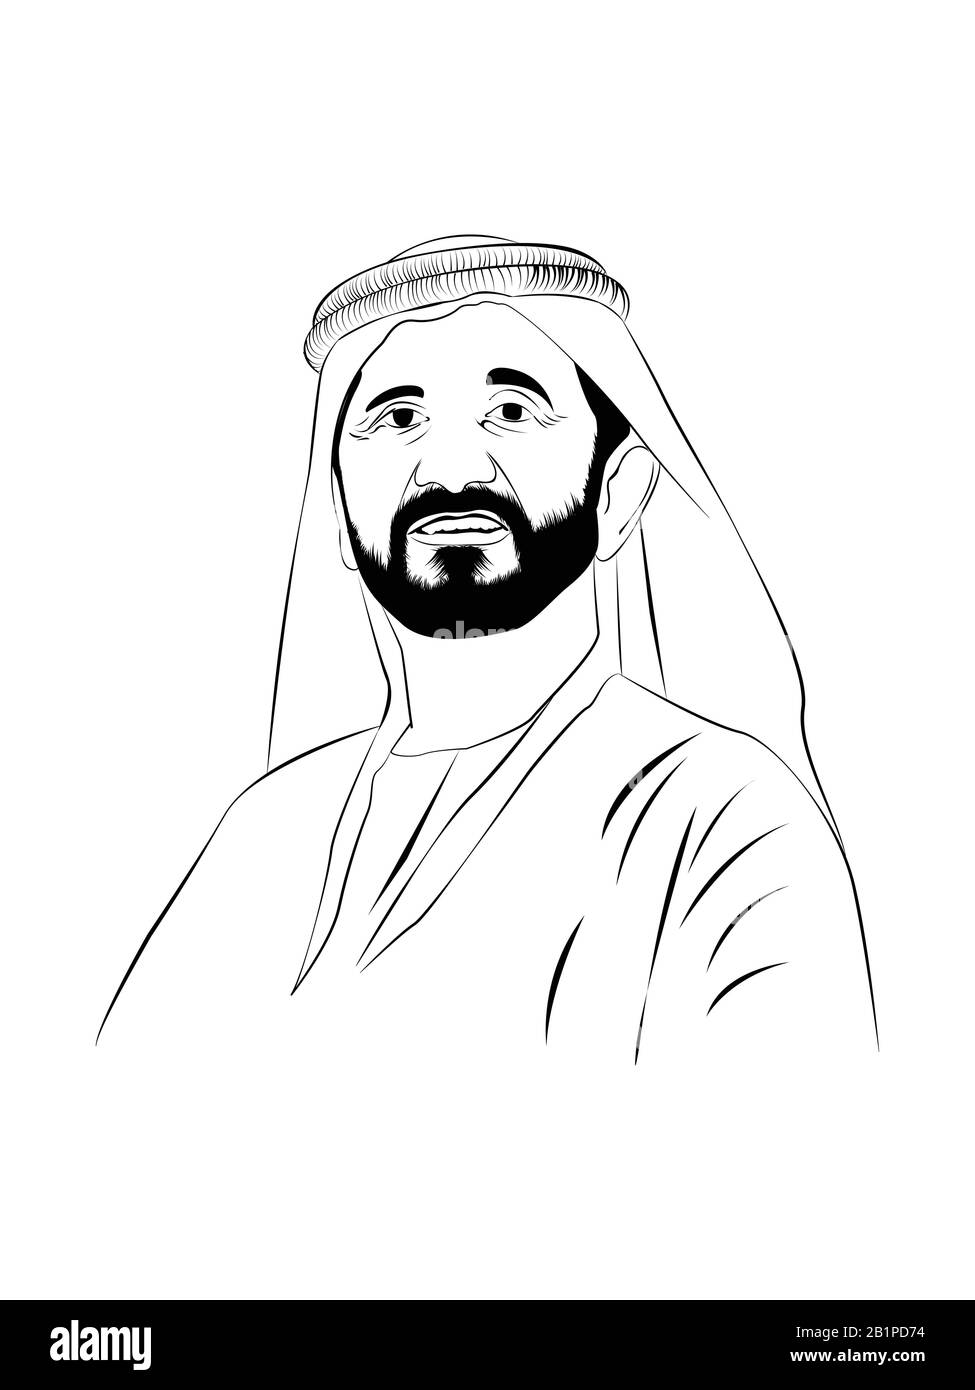 Shaik Muhammed bin Rashid Al Maktoum. Vice President and Prime Minister of the United Arab Emirates. Stock Vector